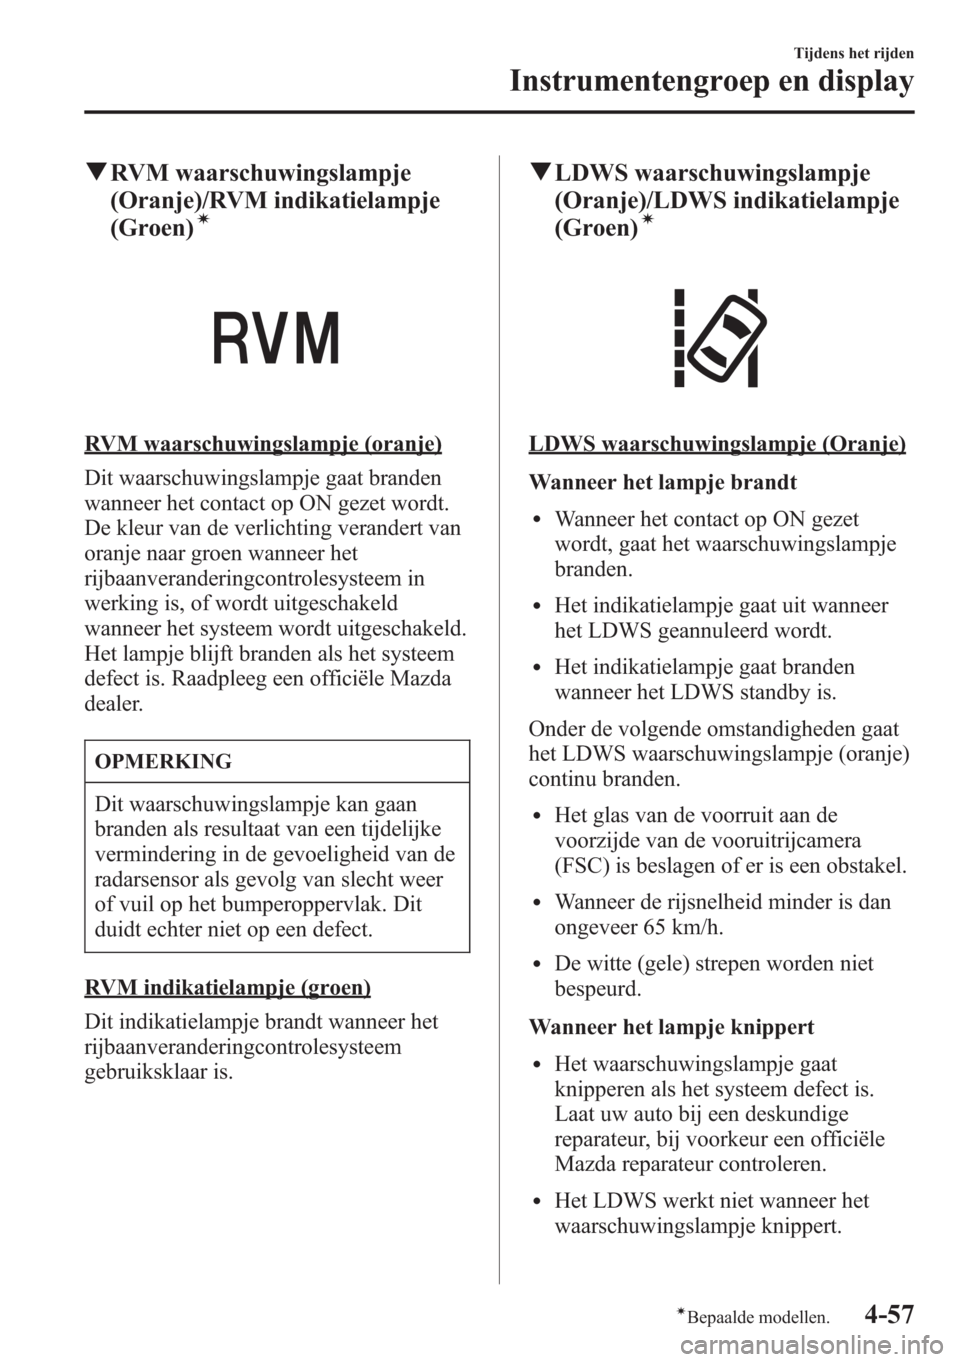 MAZDA MODEL CX-5 2013  Handleiding (in Dutch) qRVM waarschuwingslampje
(Oranje)/RVM indikatielampje
(Groen)
í
RVM waarschuwingslampje (oranje)
Dit waarschuwingslampje gaat branden
wanneer het contact op ON gezet wordt.
De kleur van de verlichtin